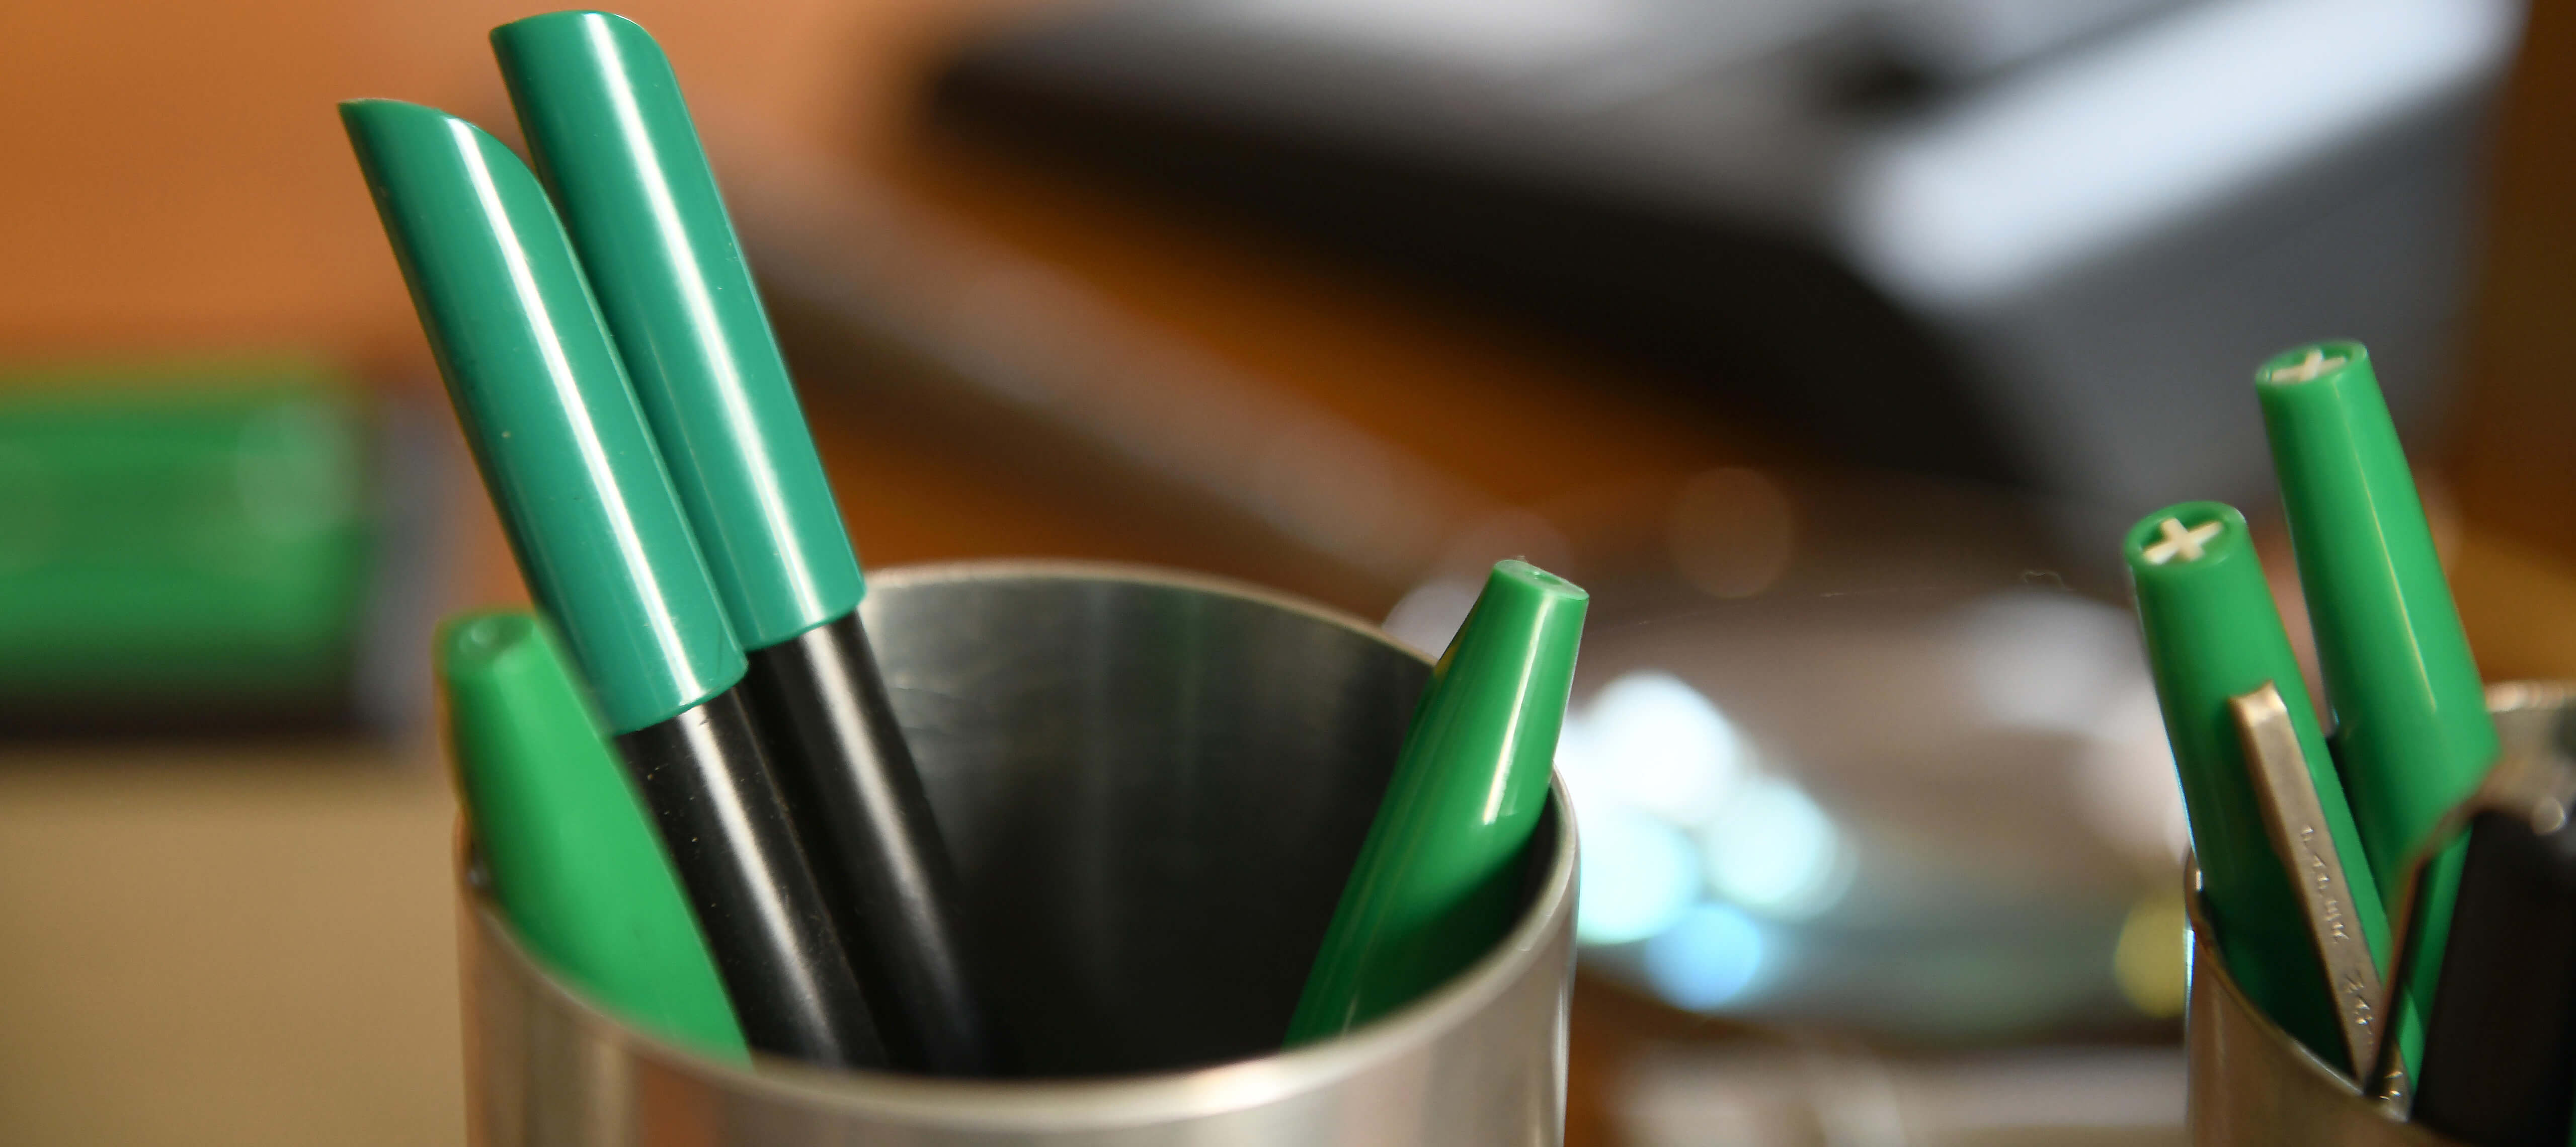 Nahaufnahme zweier Stiftbehälter mit grünen Filzmakern auf Schmidts Schreibtisch.